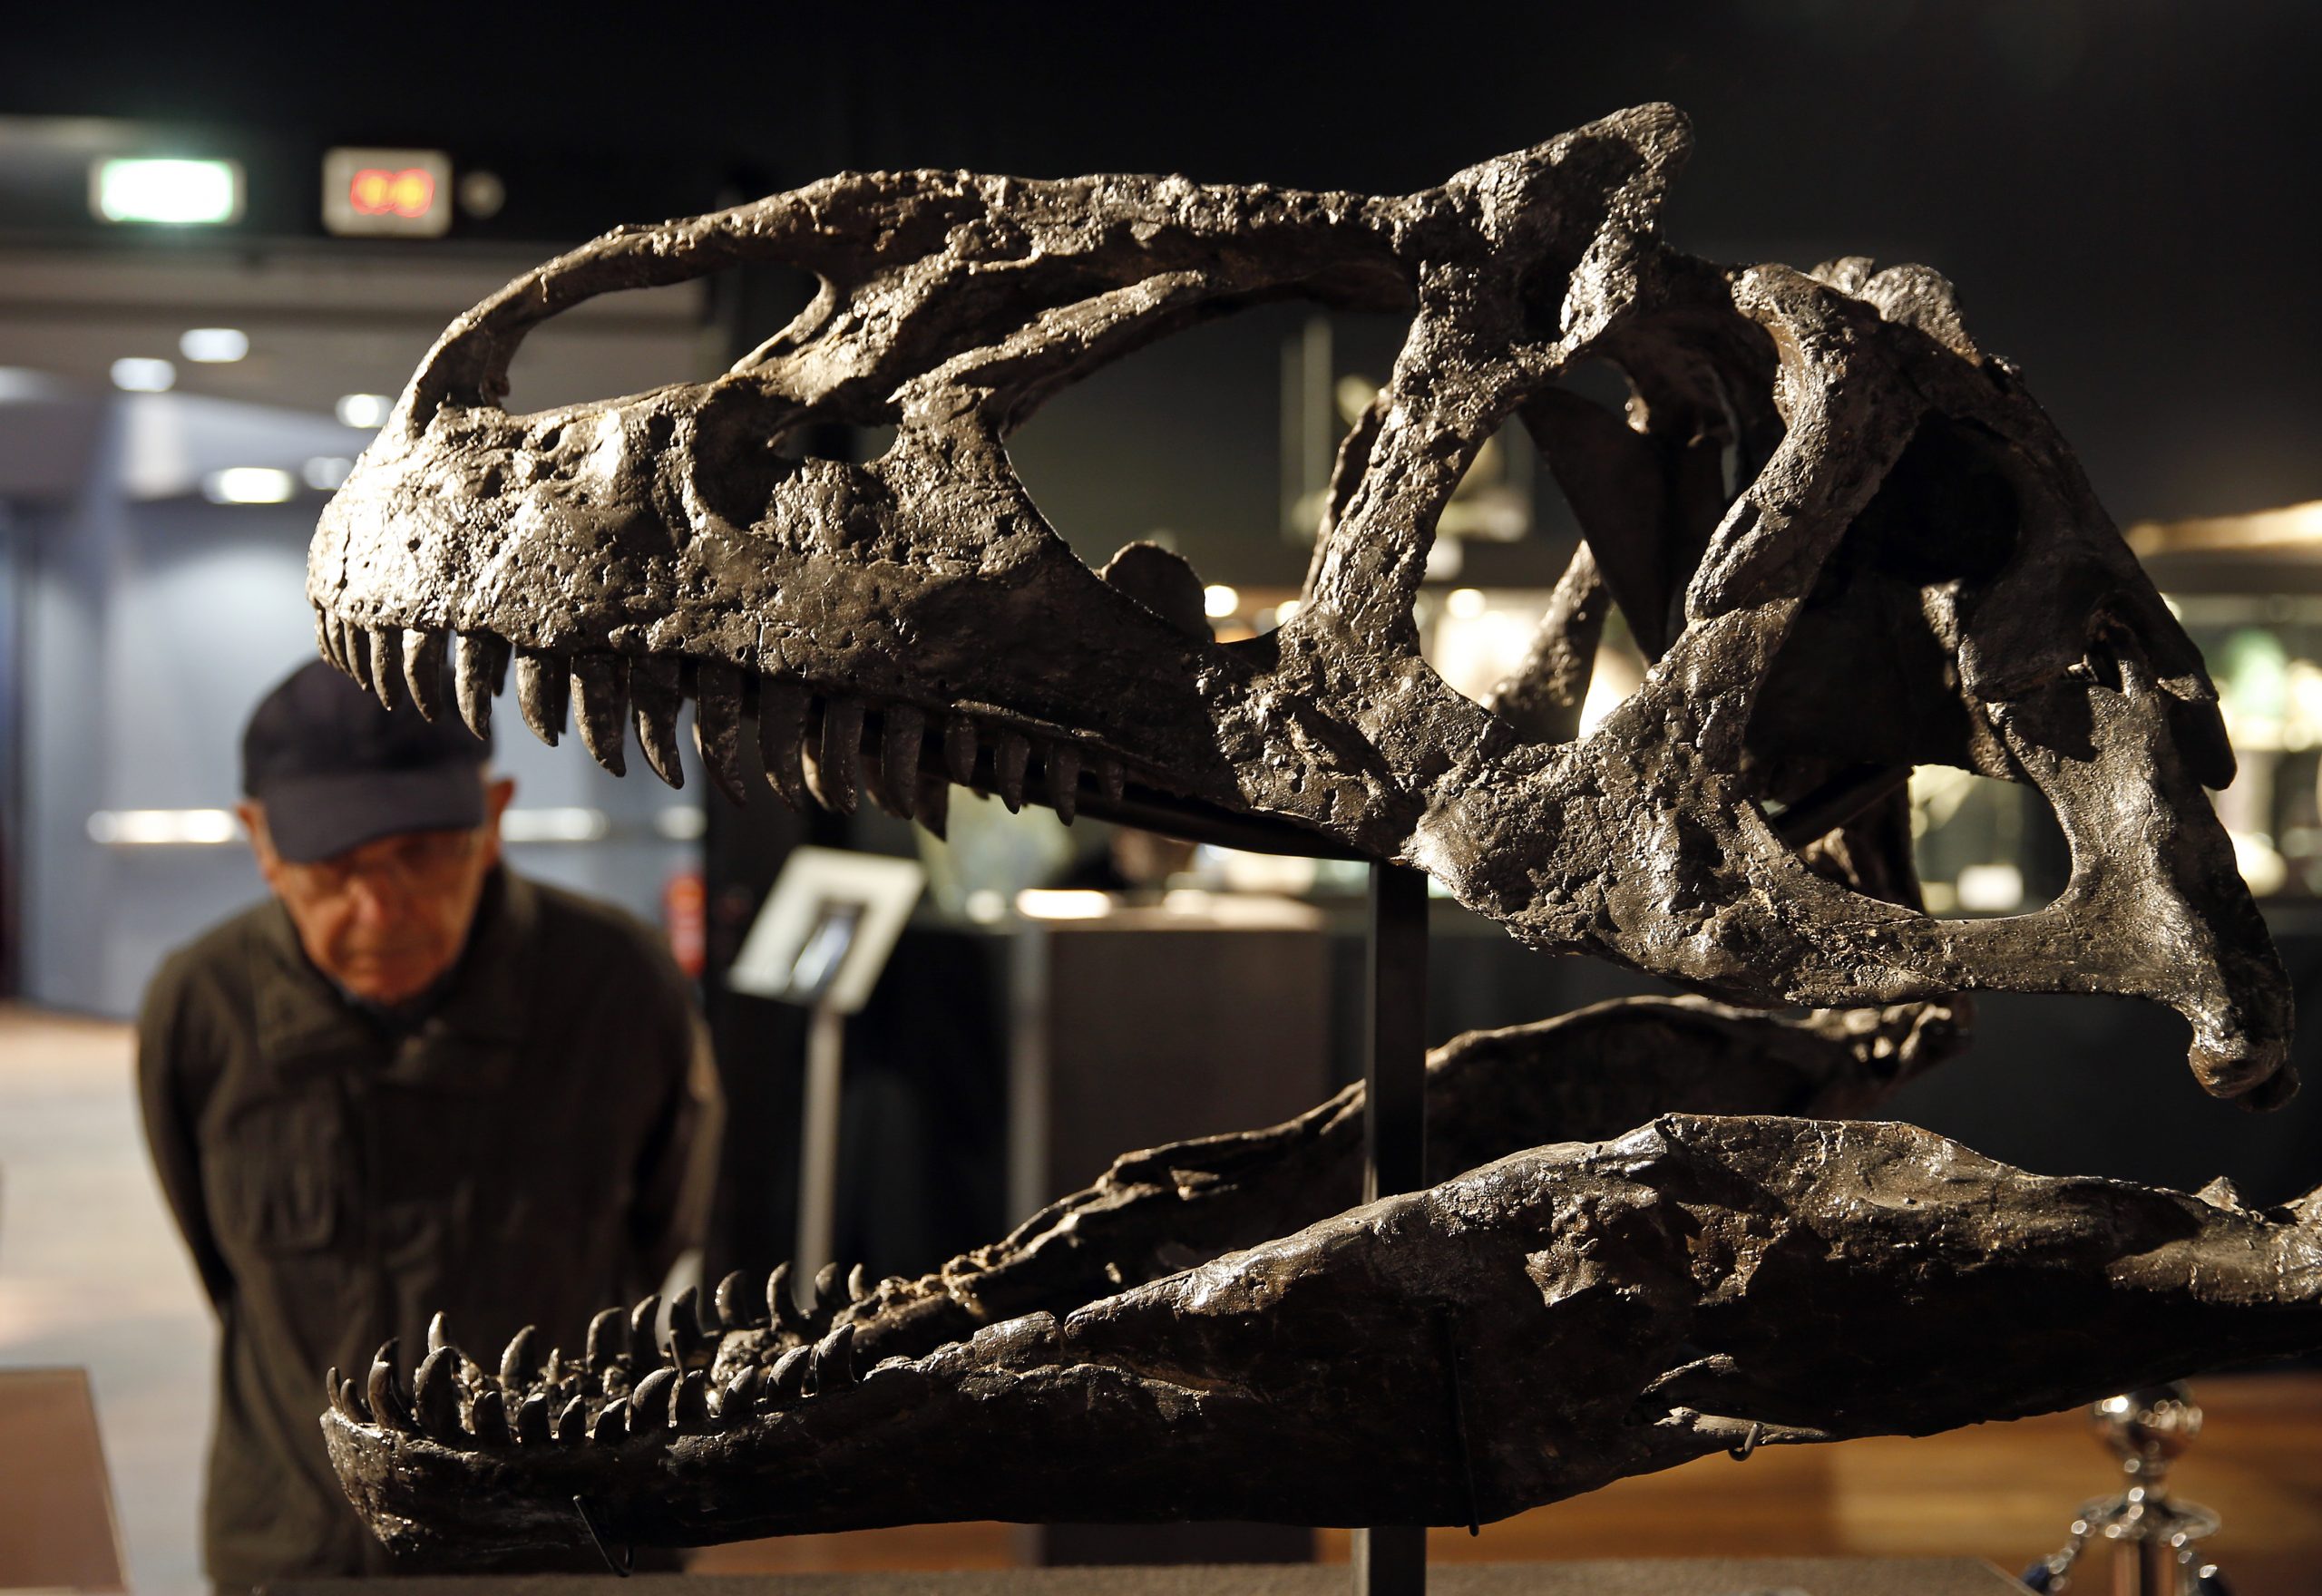 Investigadores hallan el fósil de huevo de dinosaurio más pequeño que se tenga registrado